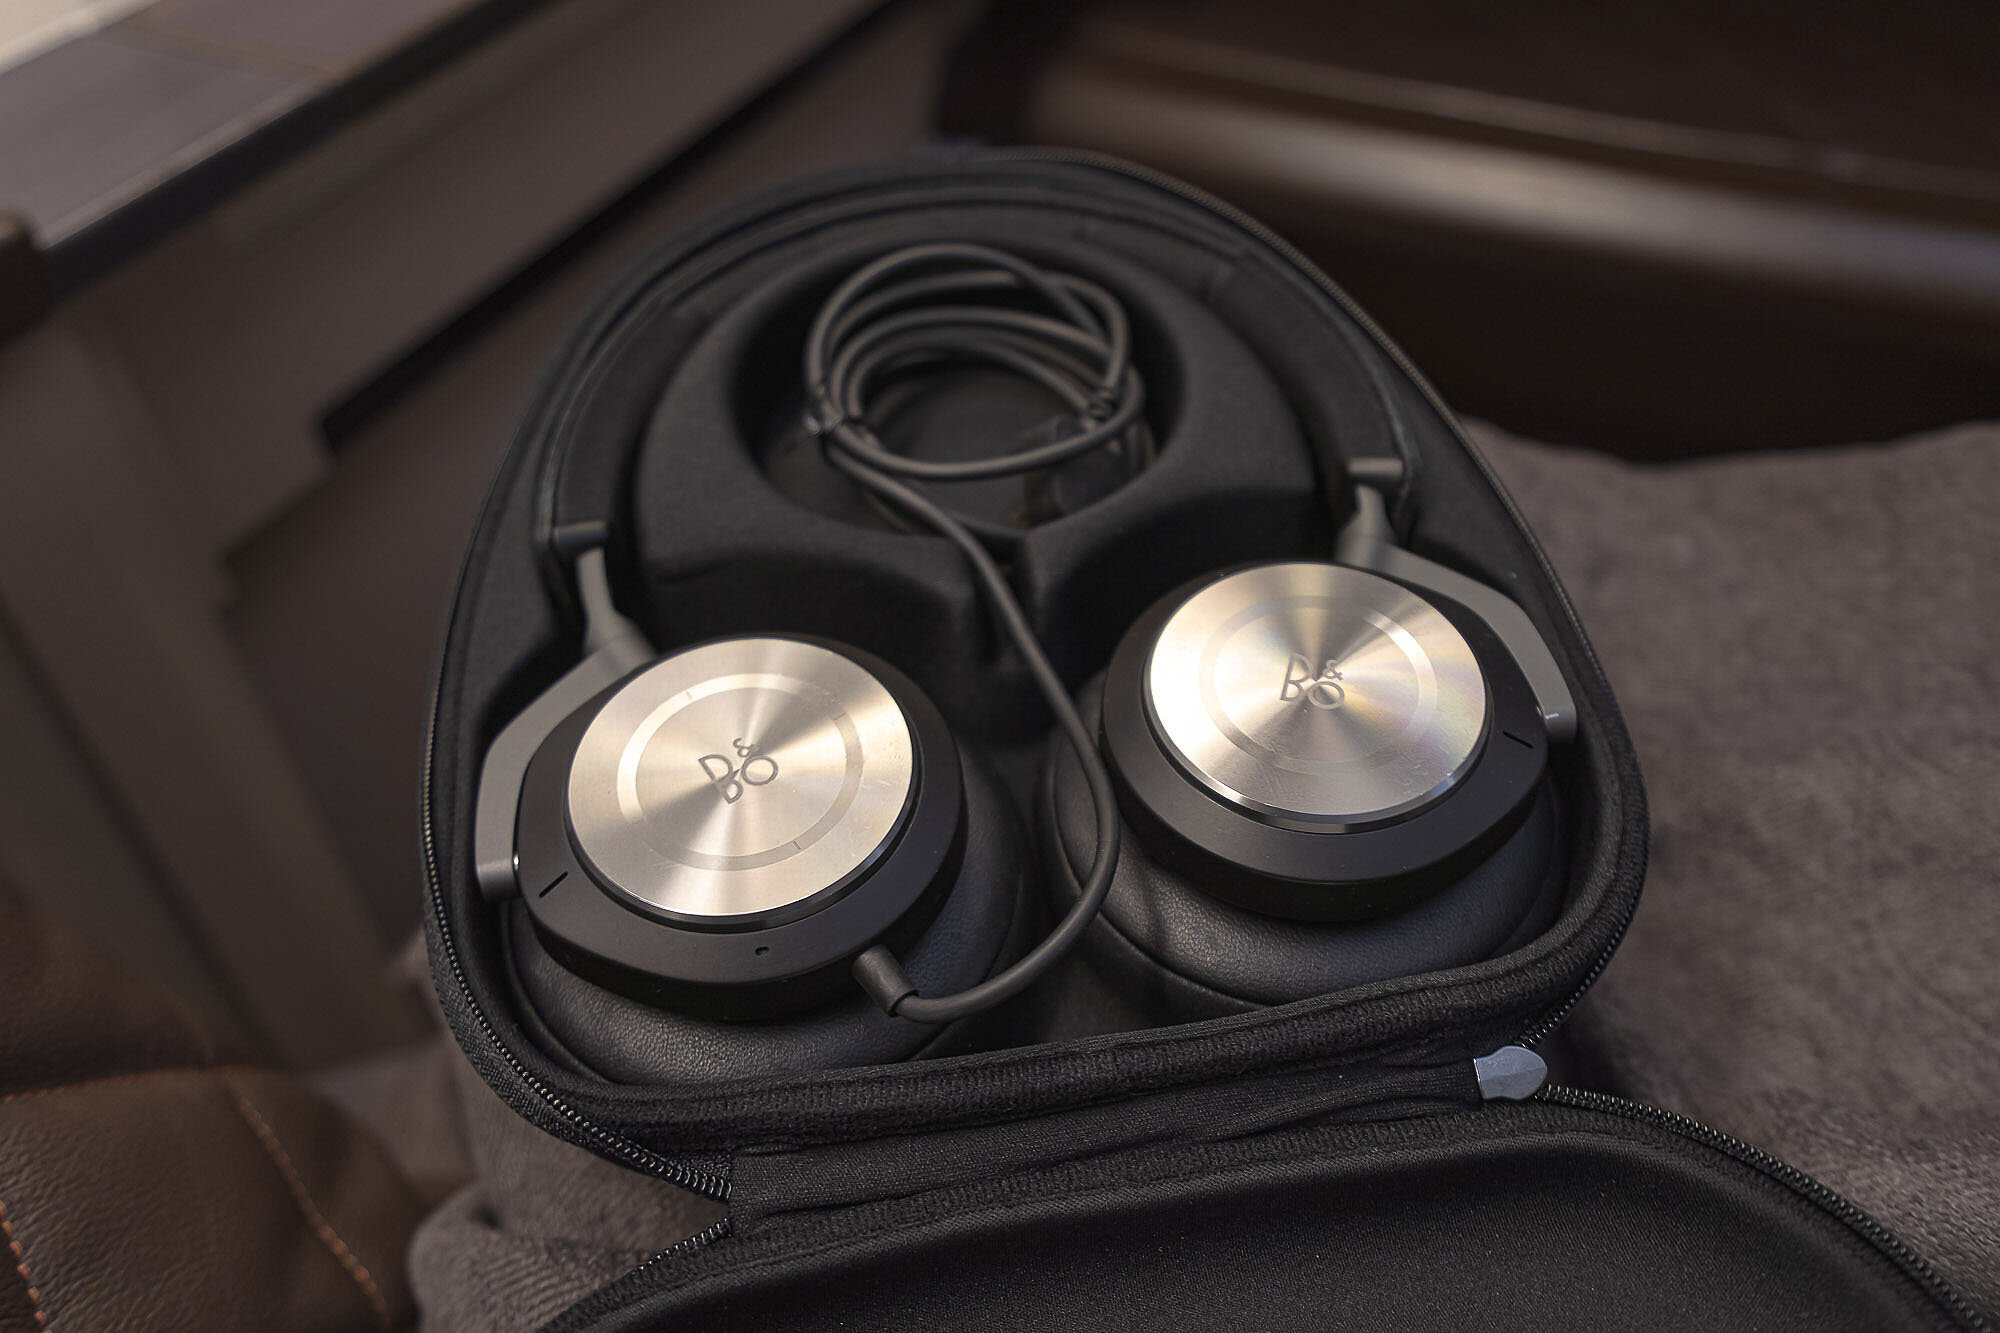 Bang & Olufsen headphones